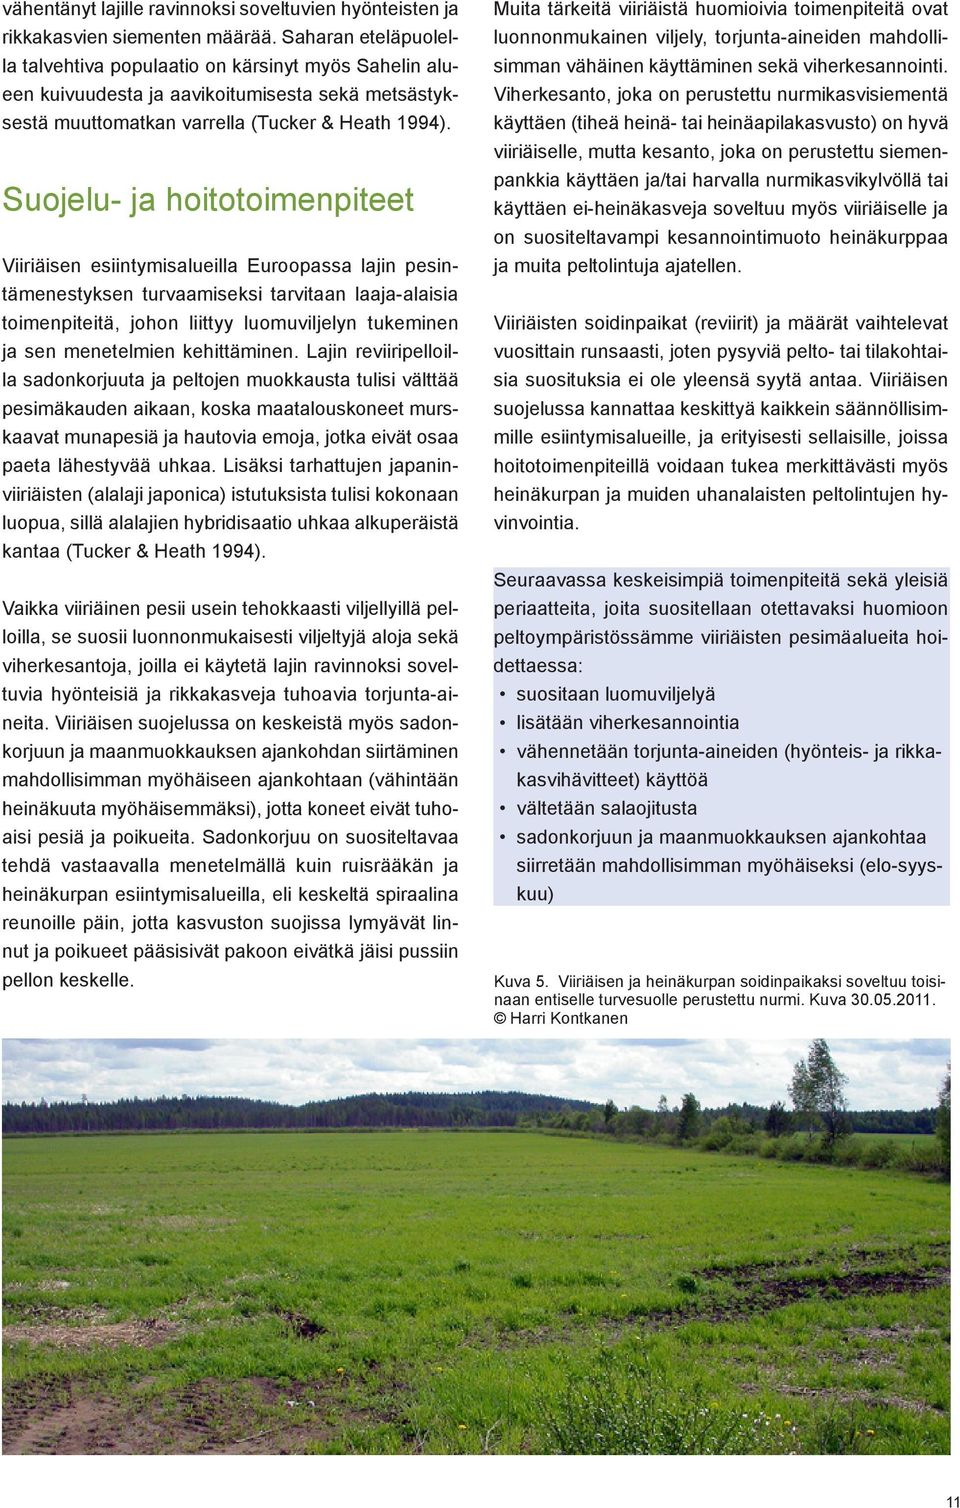 Suojelu- ja hoitotoimenpiteet Viiriäisen esiintymisalueilla Euroopassa lajin pesintämenestyksen turvaamiseksi tarvitaan laaja-alaisia toimenpiteitä, johon liittyy luomuviljelyn tukeminen ja sen